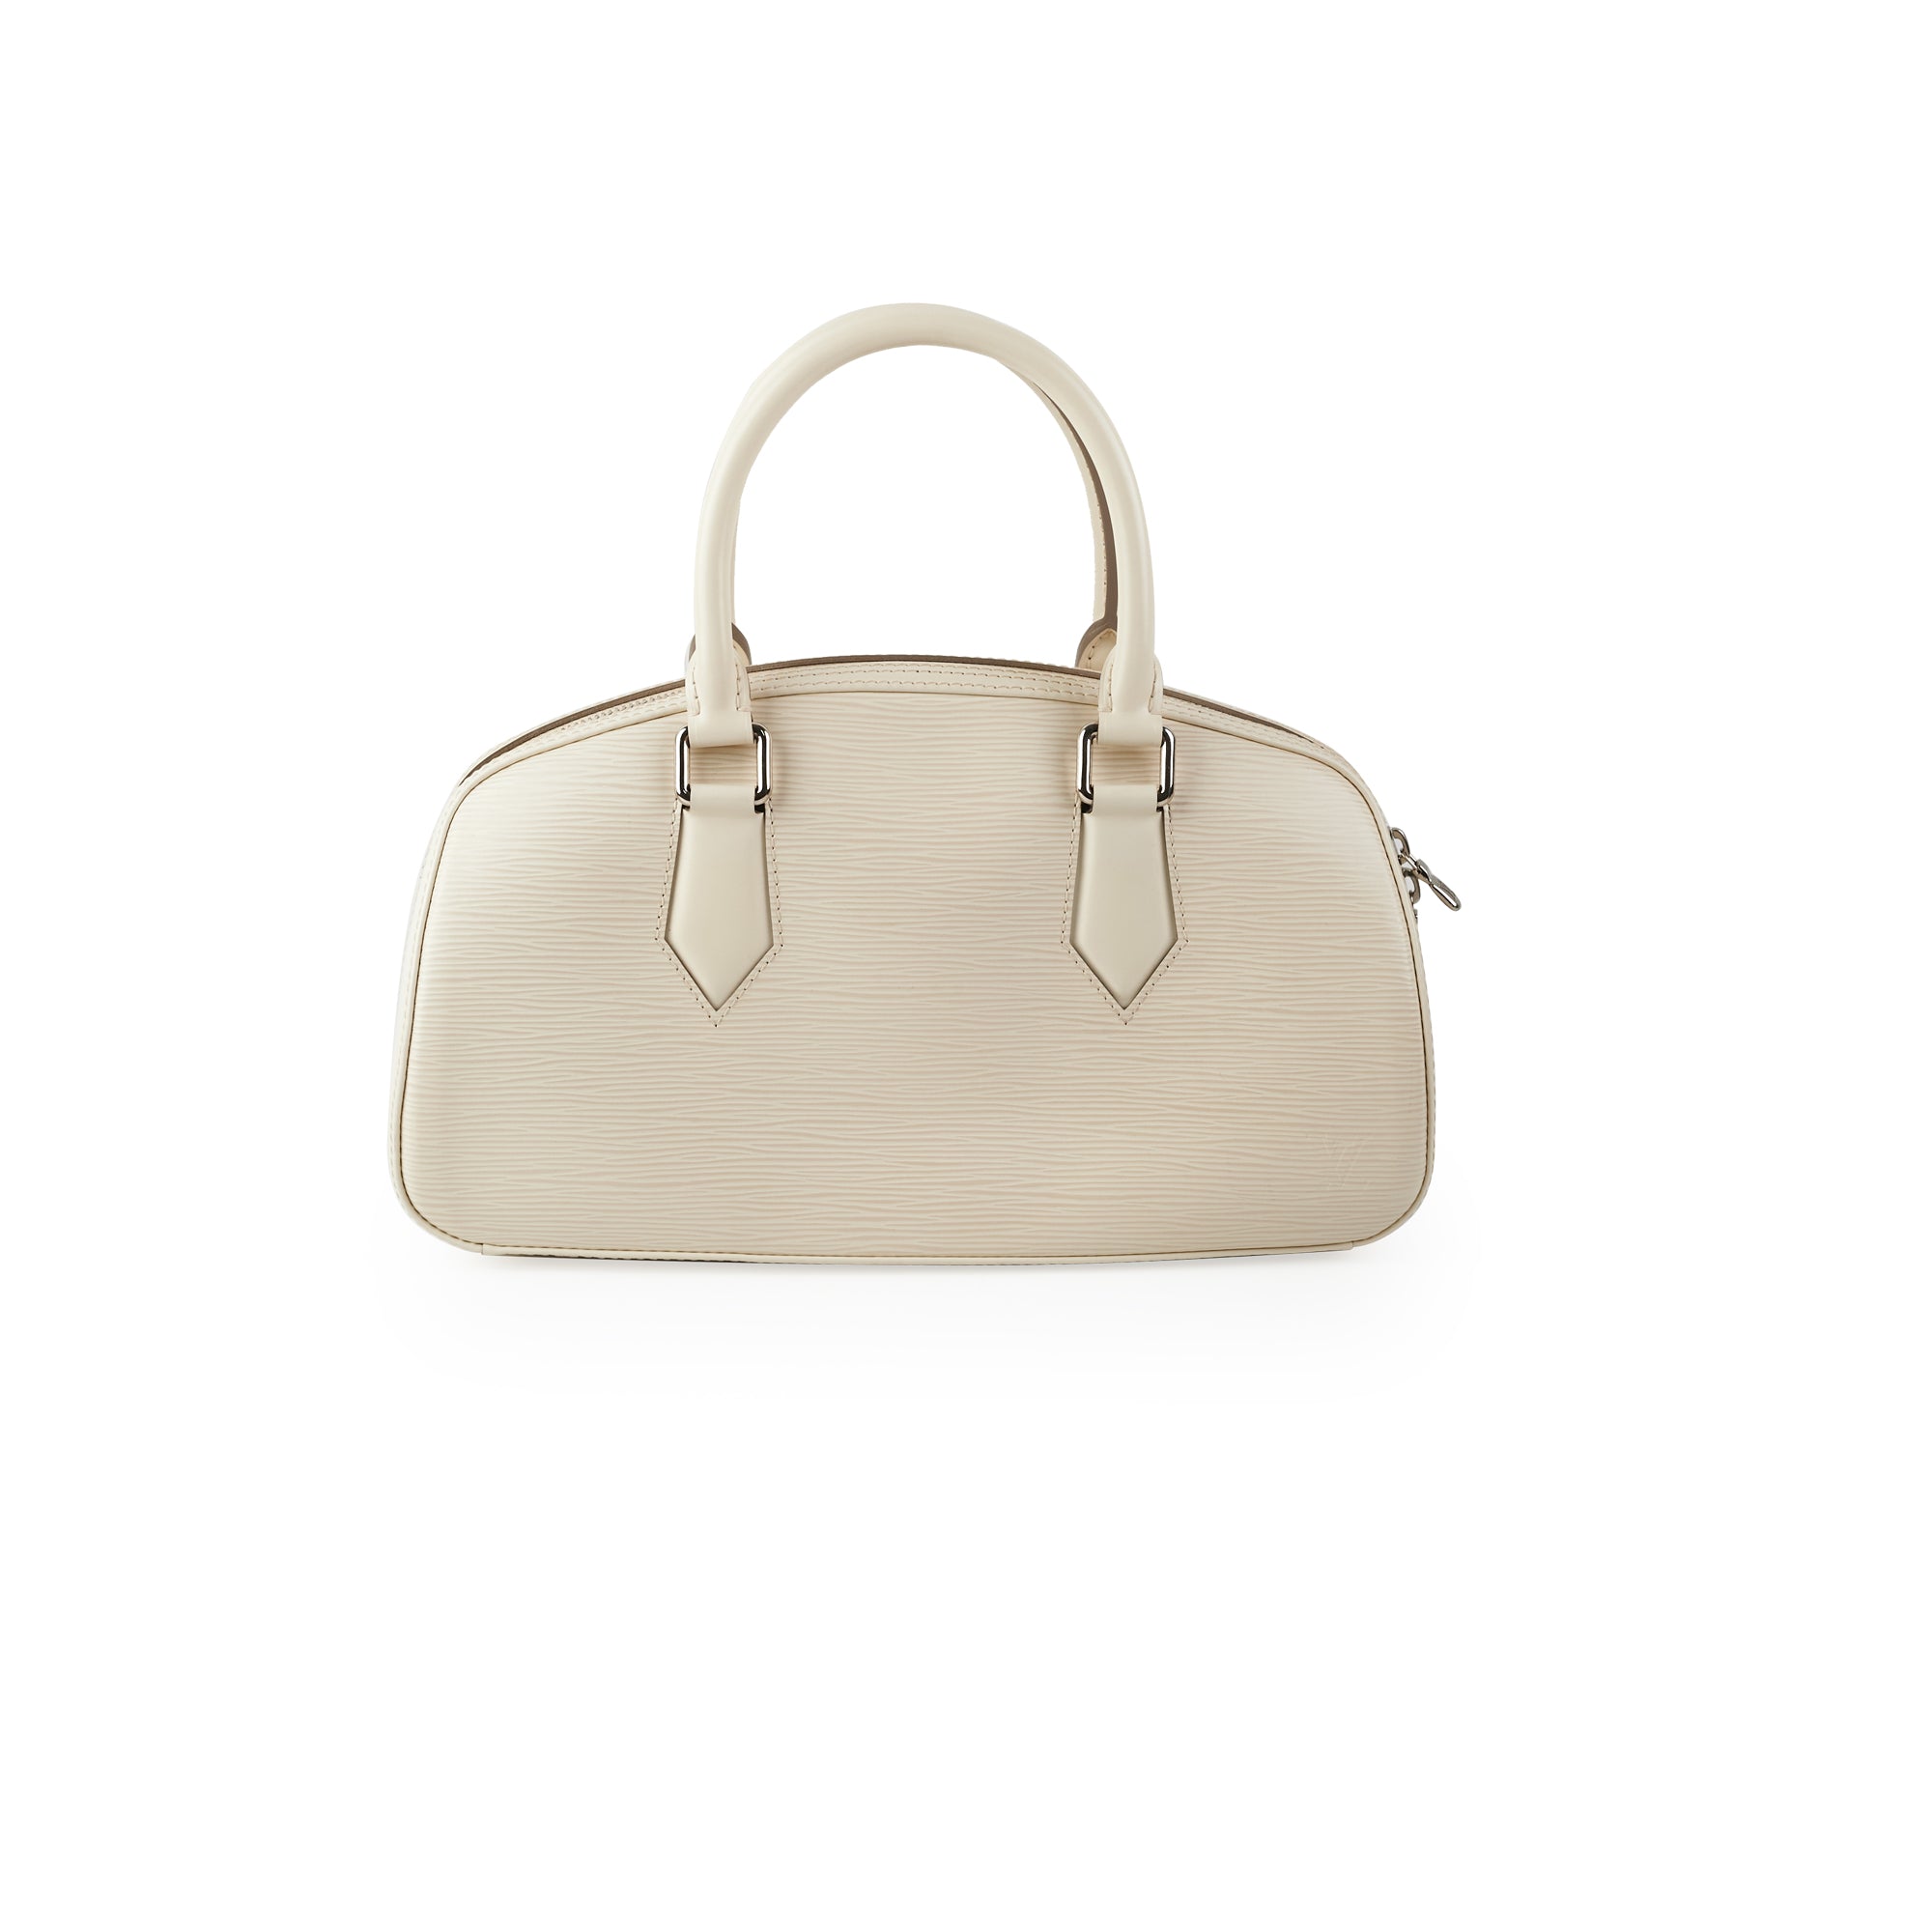 Louis Vuitton Epi Leather Mini Boston Bag Handbag White 18x32x10cm Free  Shipping